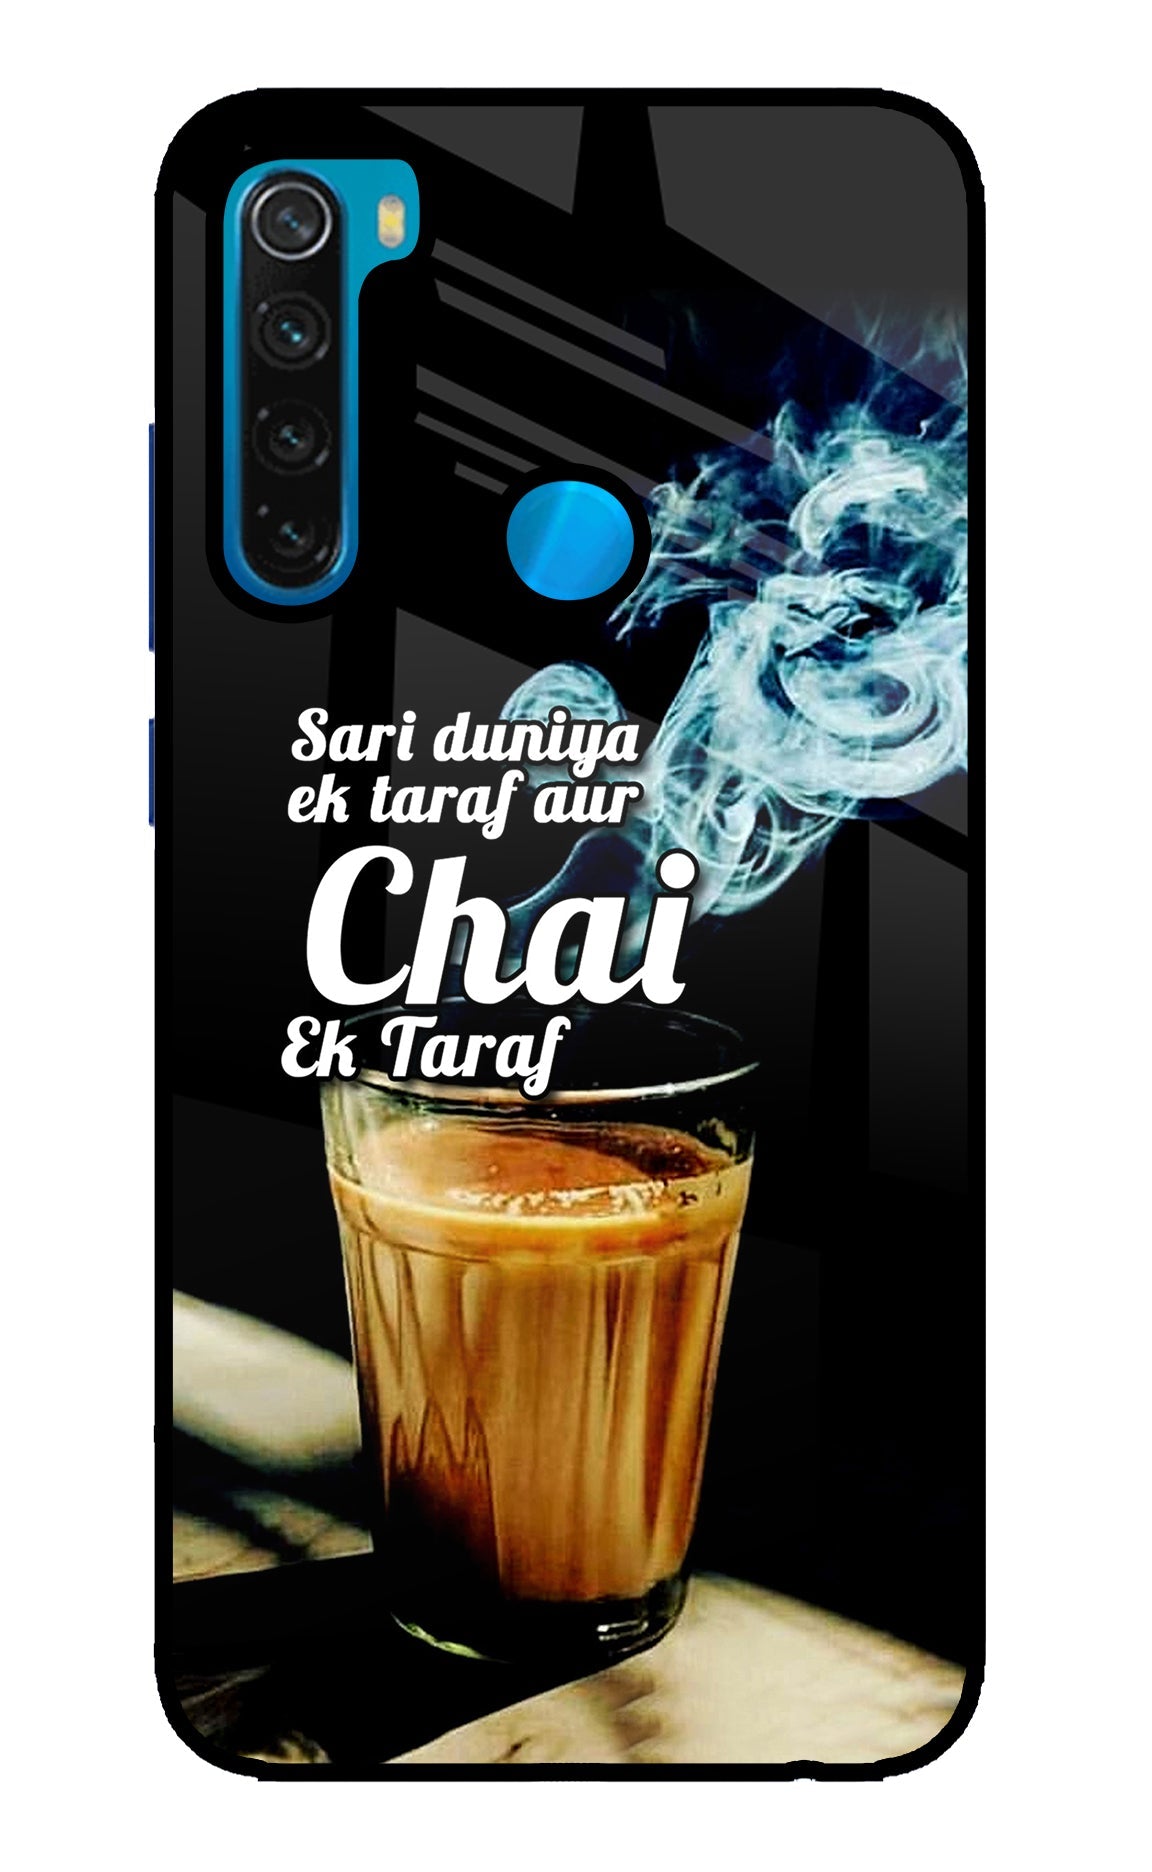 Chai Ek Taraf Quote Redmi Note 8 Glass Case